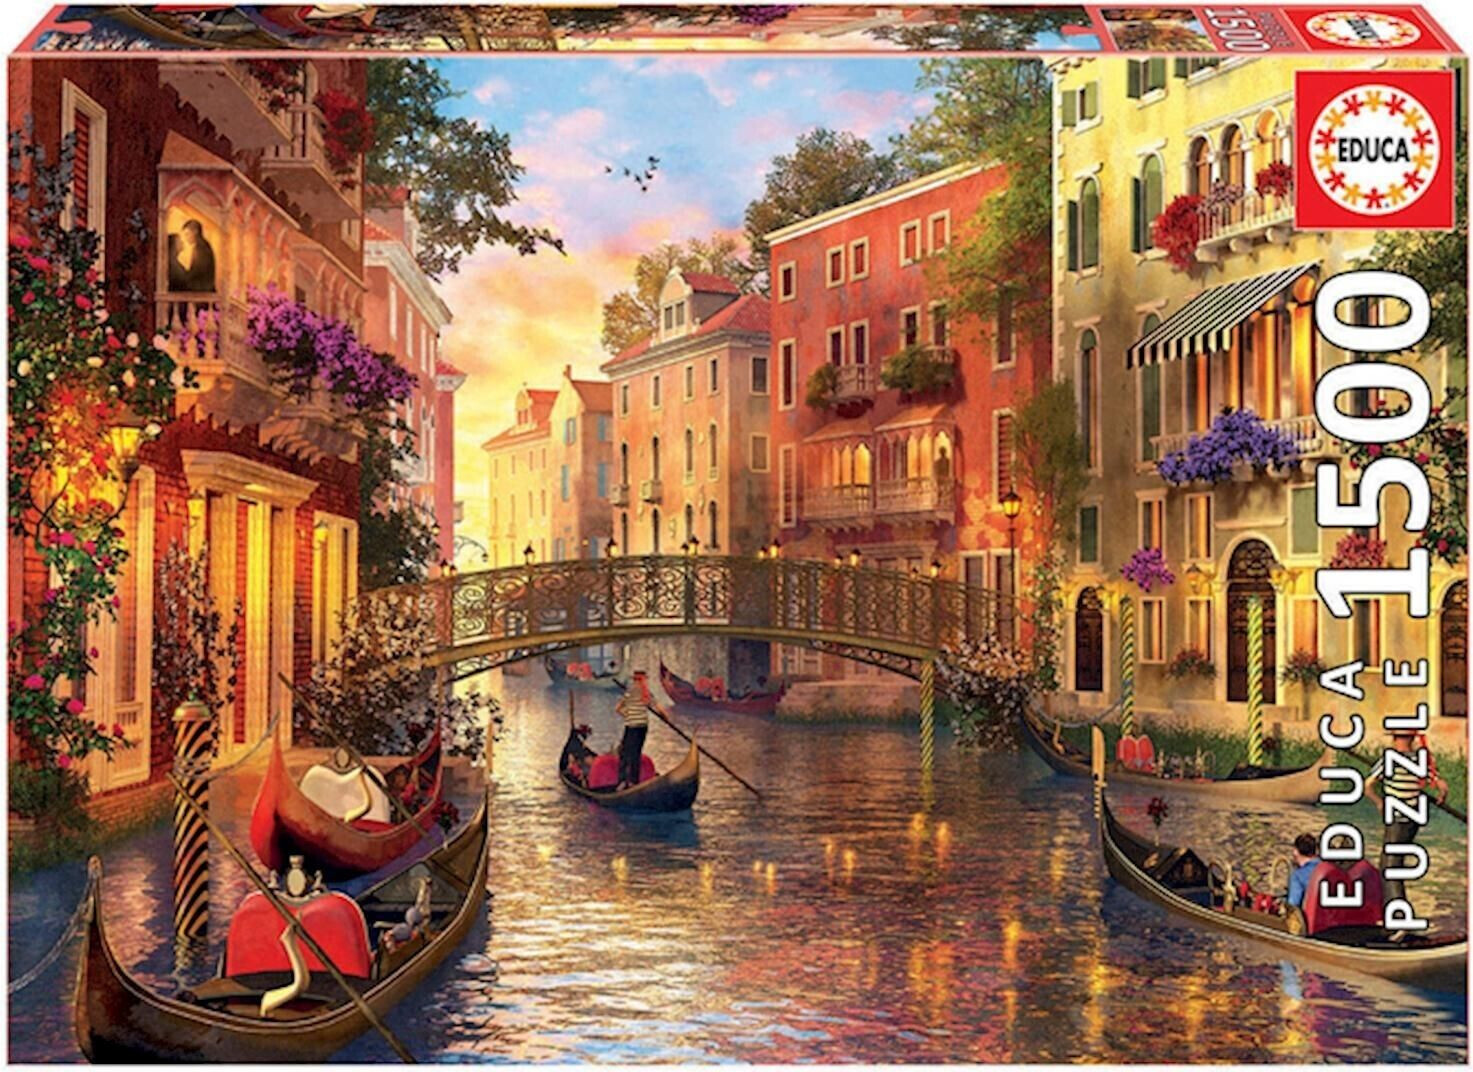 Photos - Jigsaw Puzzle / Mosaic Educa Borrás Educa Borrás Sunset in Venice (17124)